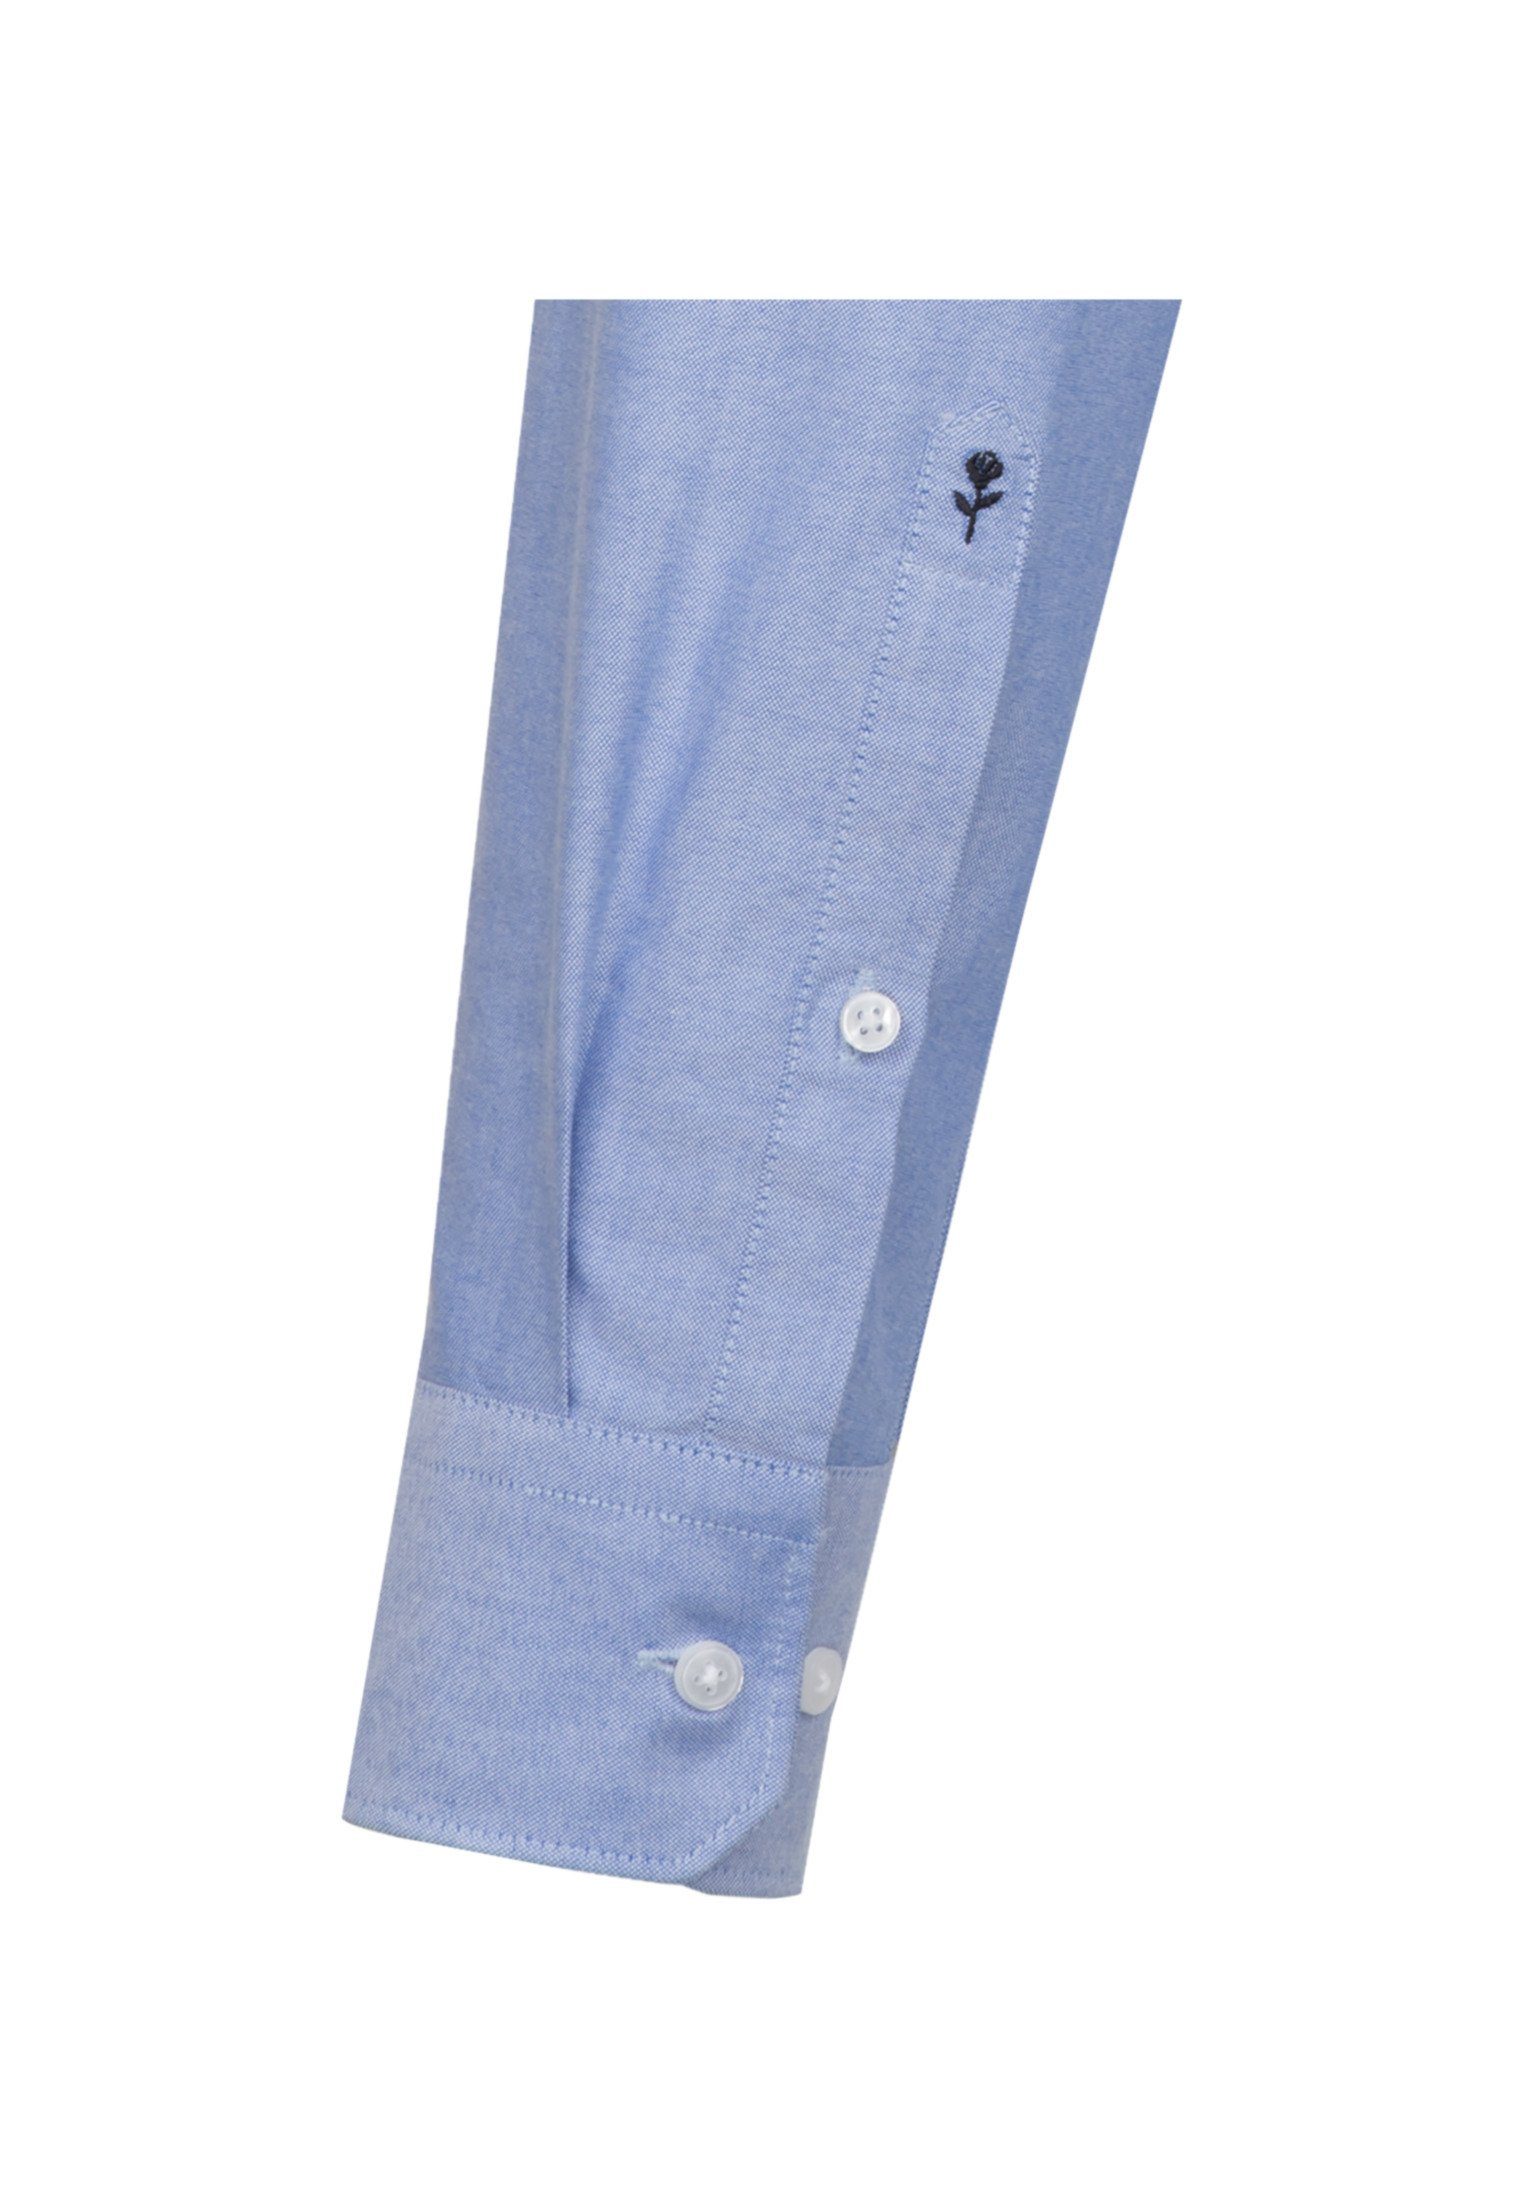 Uni Langarm seidensticker Regular Button-Down-Kragen Regular Hellblau Businesshemd